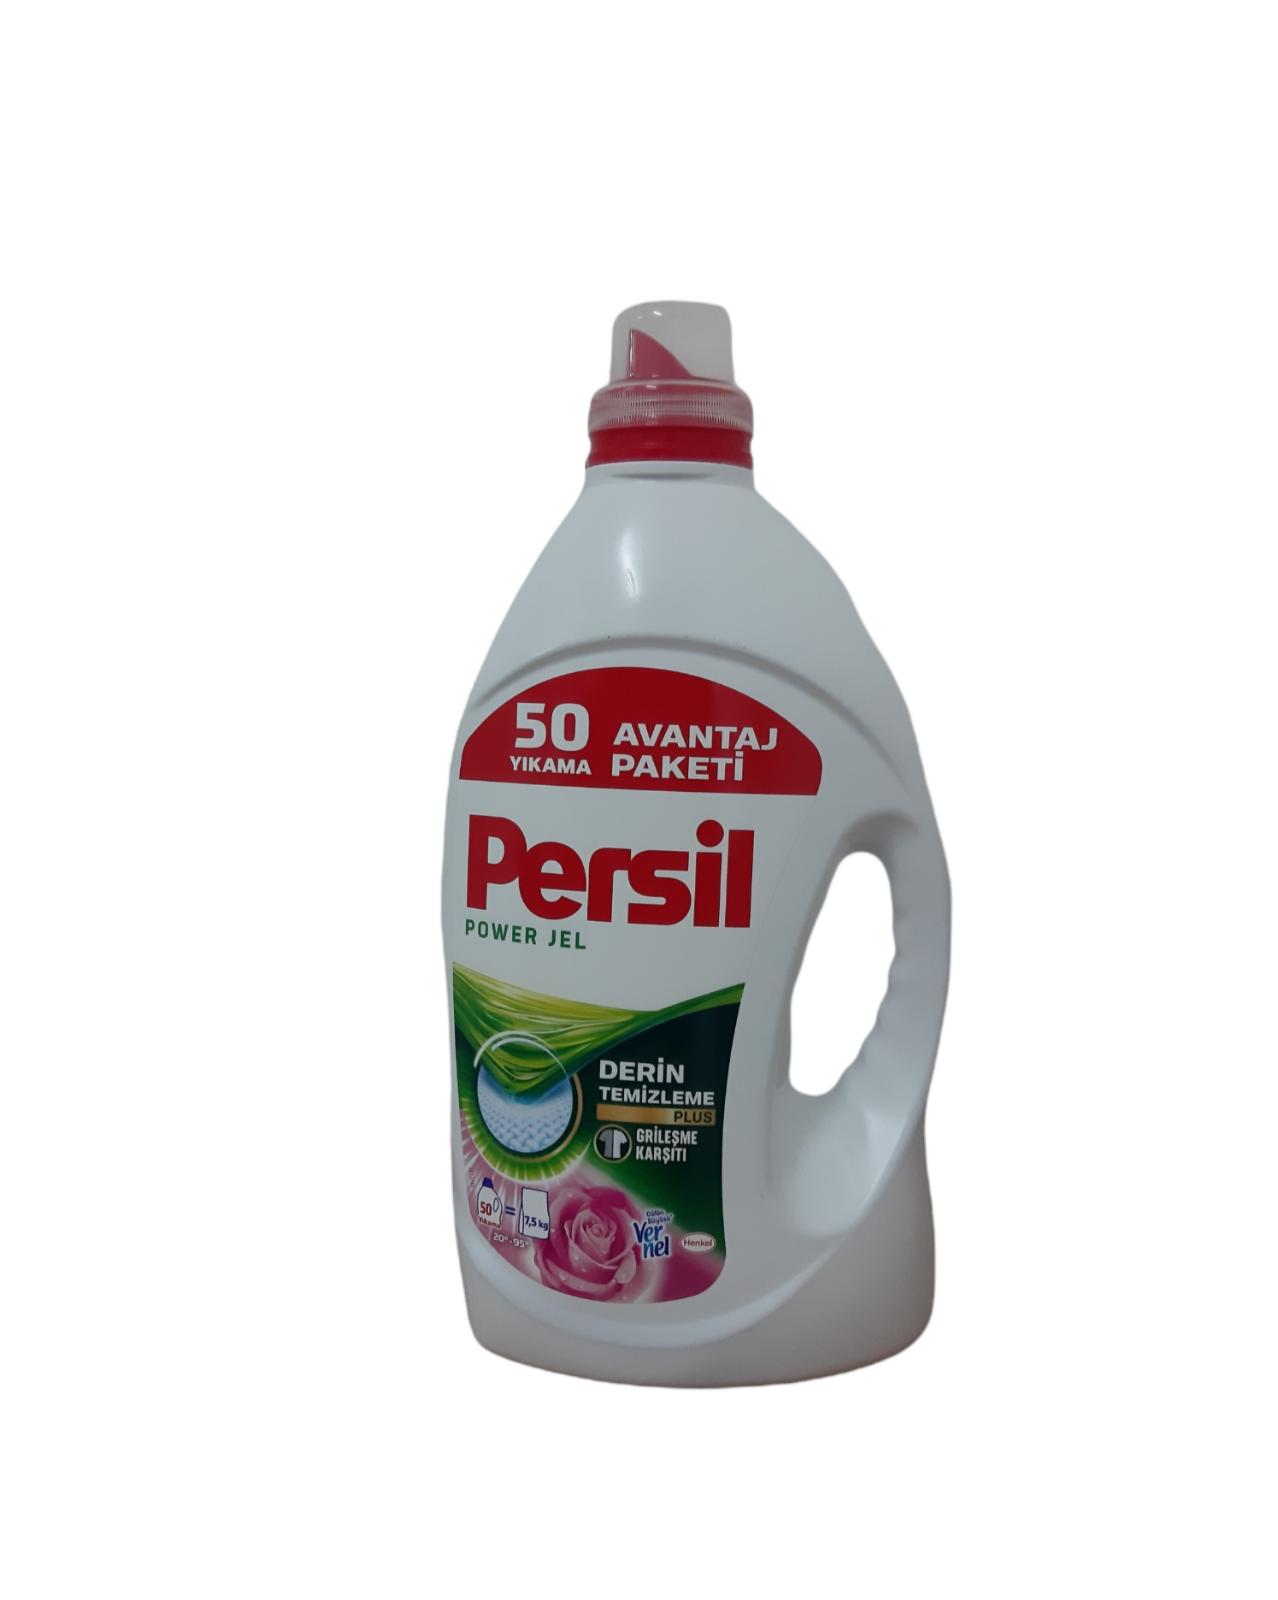 Persil  3.250 lt Power Jel Derin Temizleme Jel Çamaşır Deterjanı 50 Yıkama  Avantaj Paketi